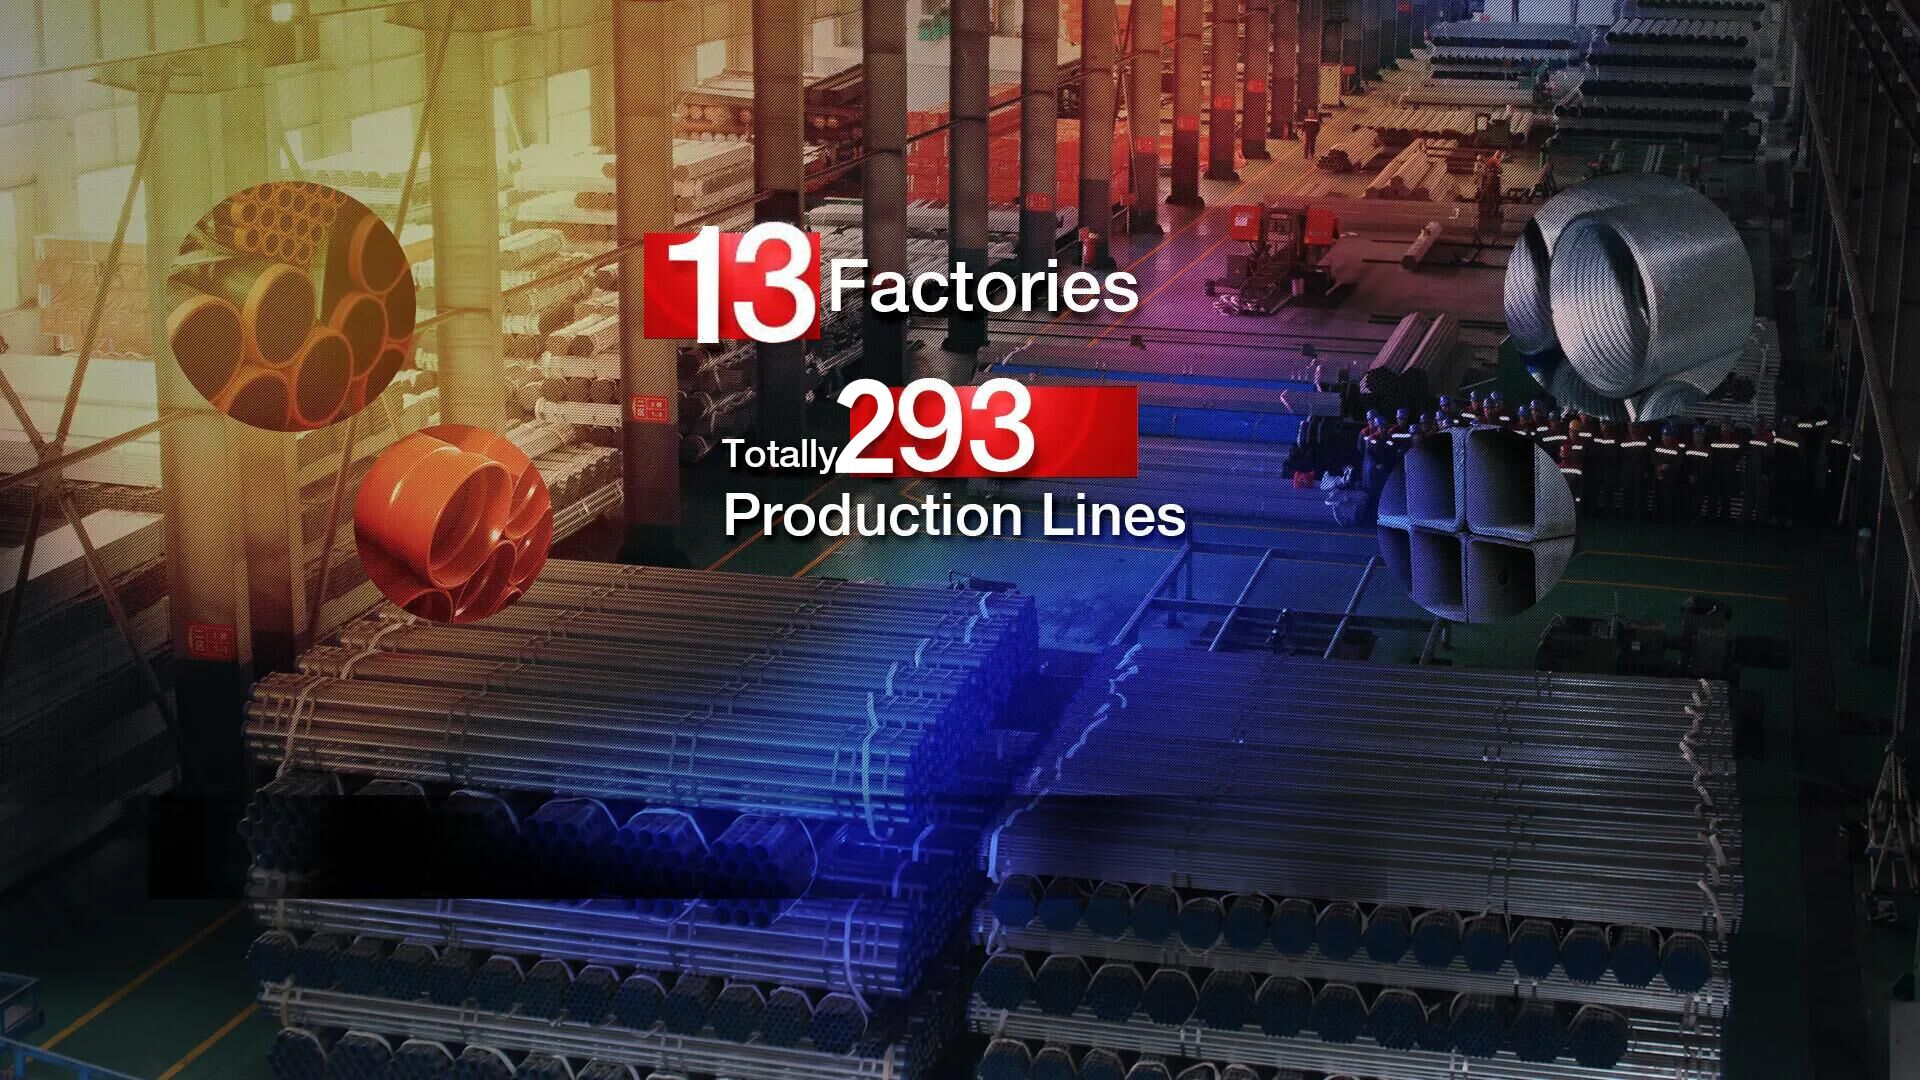 fabrika dhe linjat e prodhimit